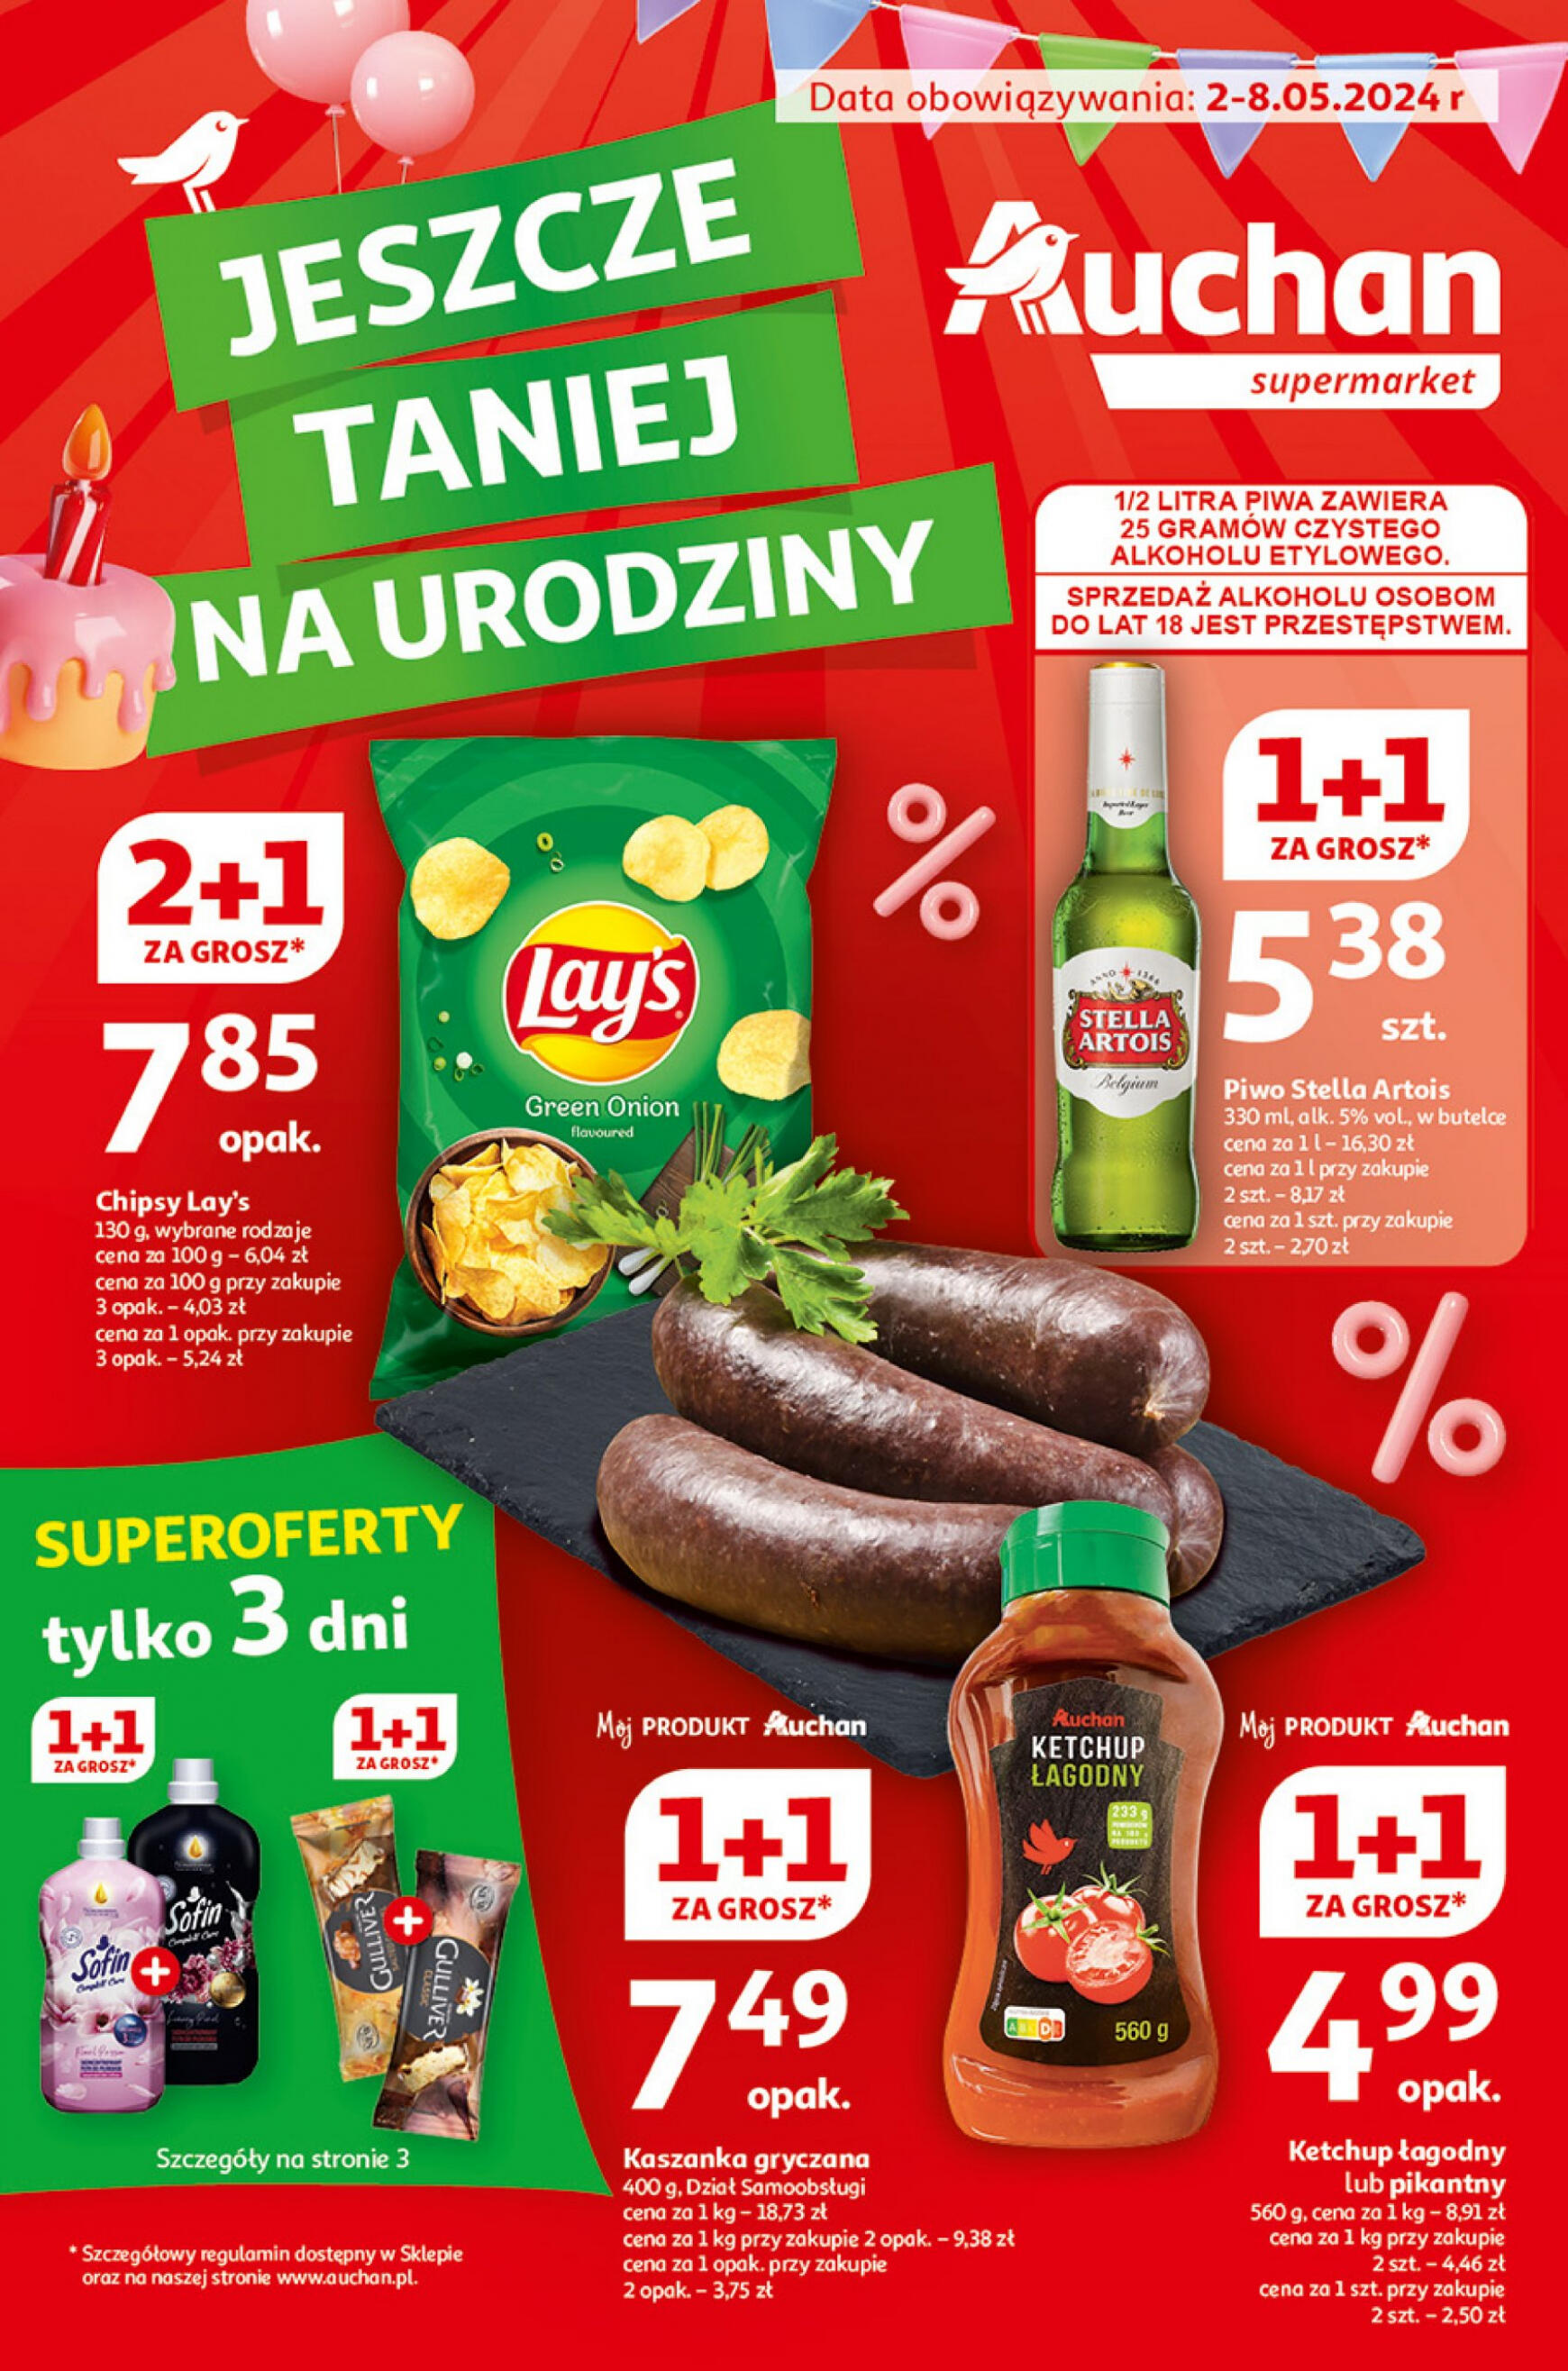 auchan - Supermarket Auchan - Gazetka Jeszcze taniej na urodziny gazetka aktualna ważna od 02.05. - 08.05. - page: 1